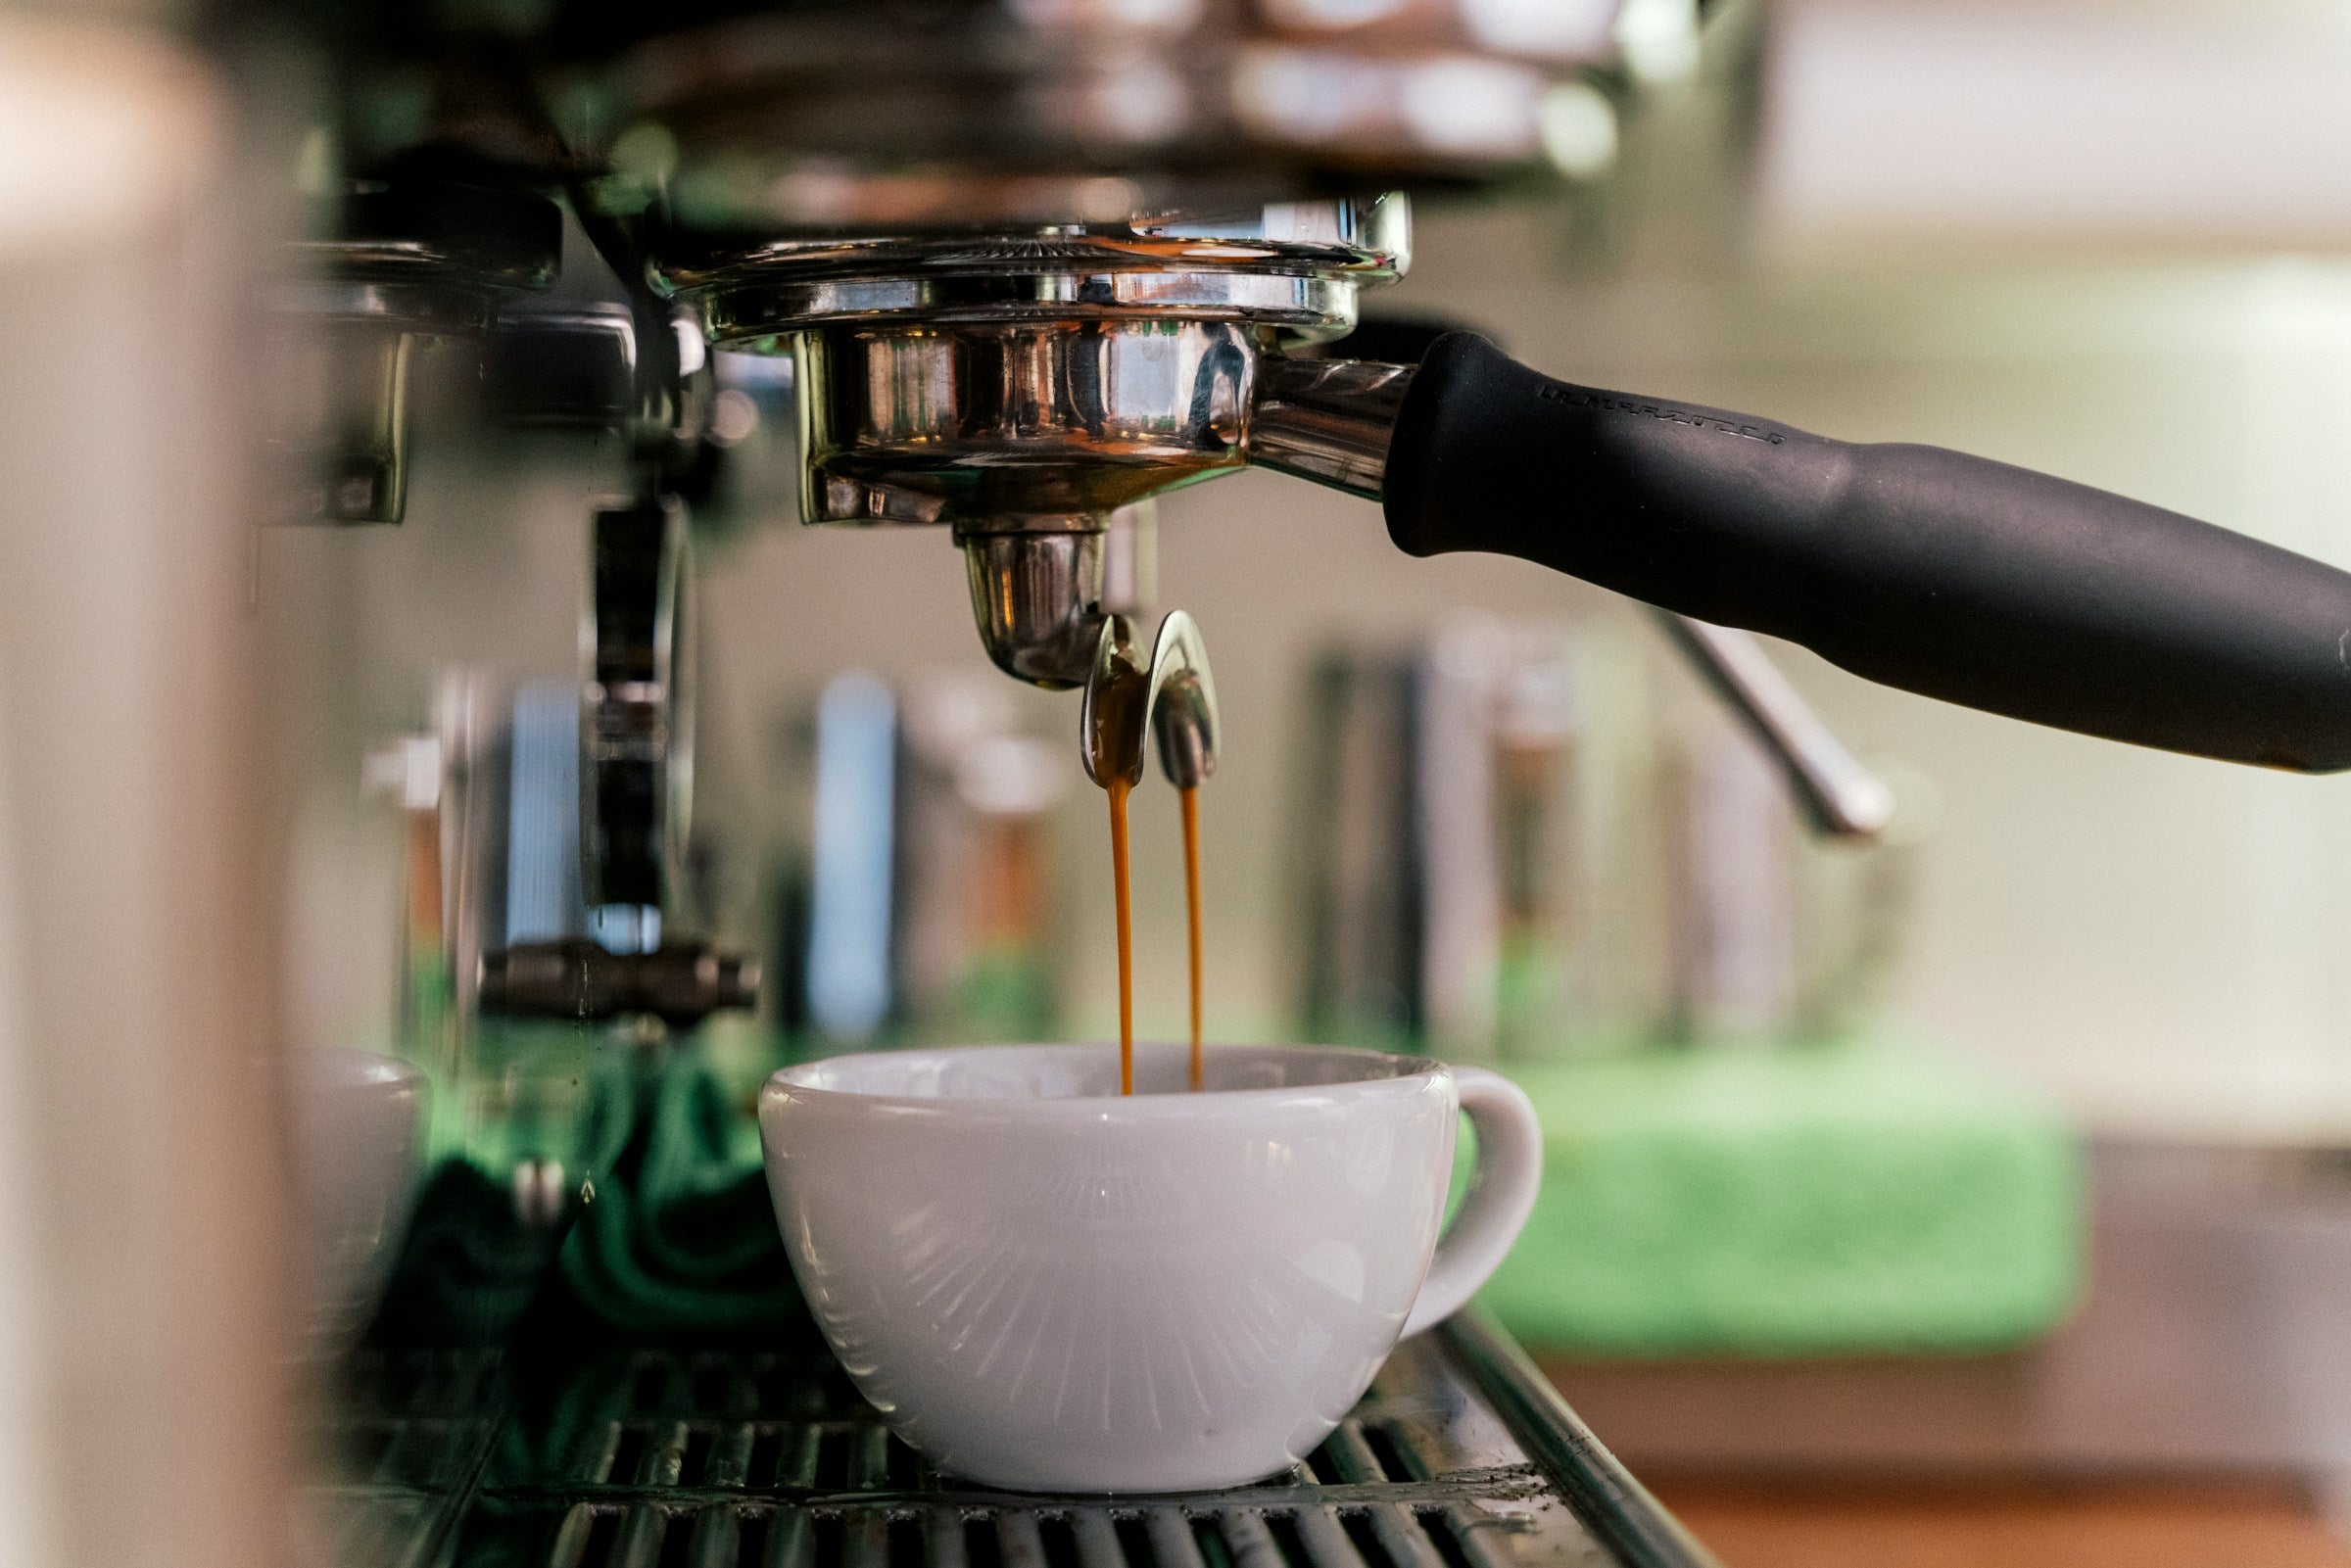 Bild von einem Siebträger in einer Espresso-Maschine auf dem Espresso in eine Tasse läuft.